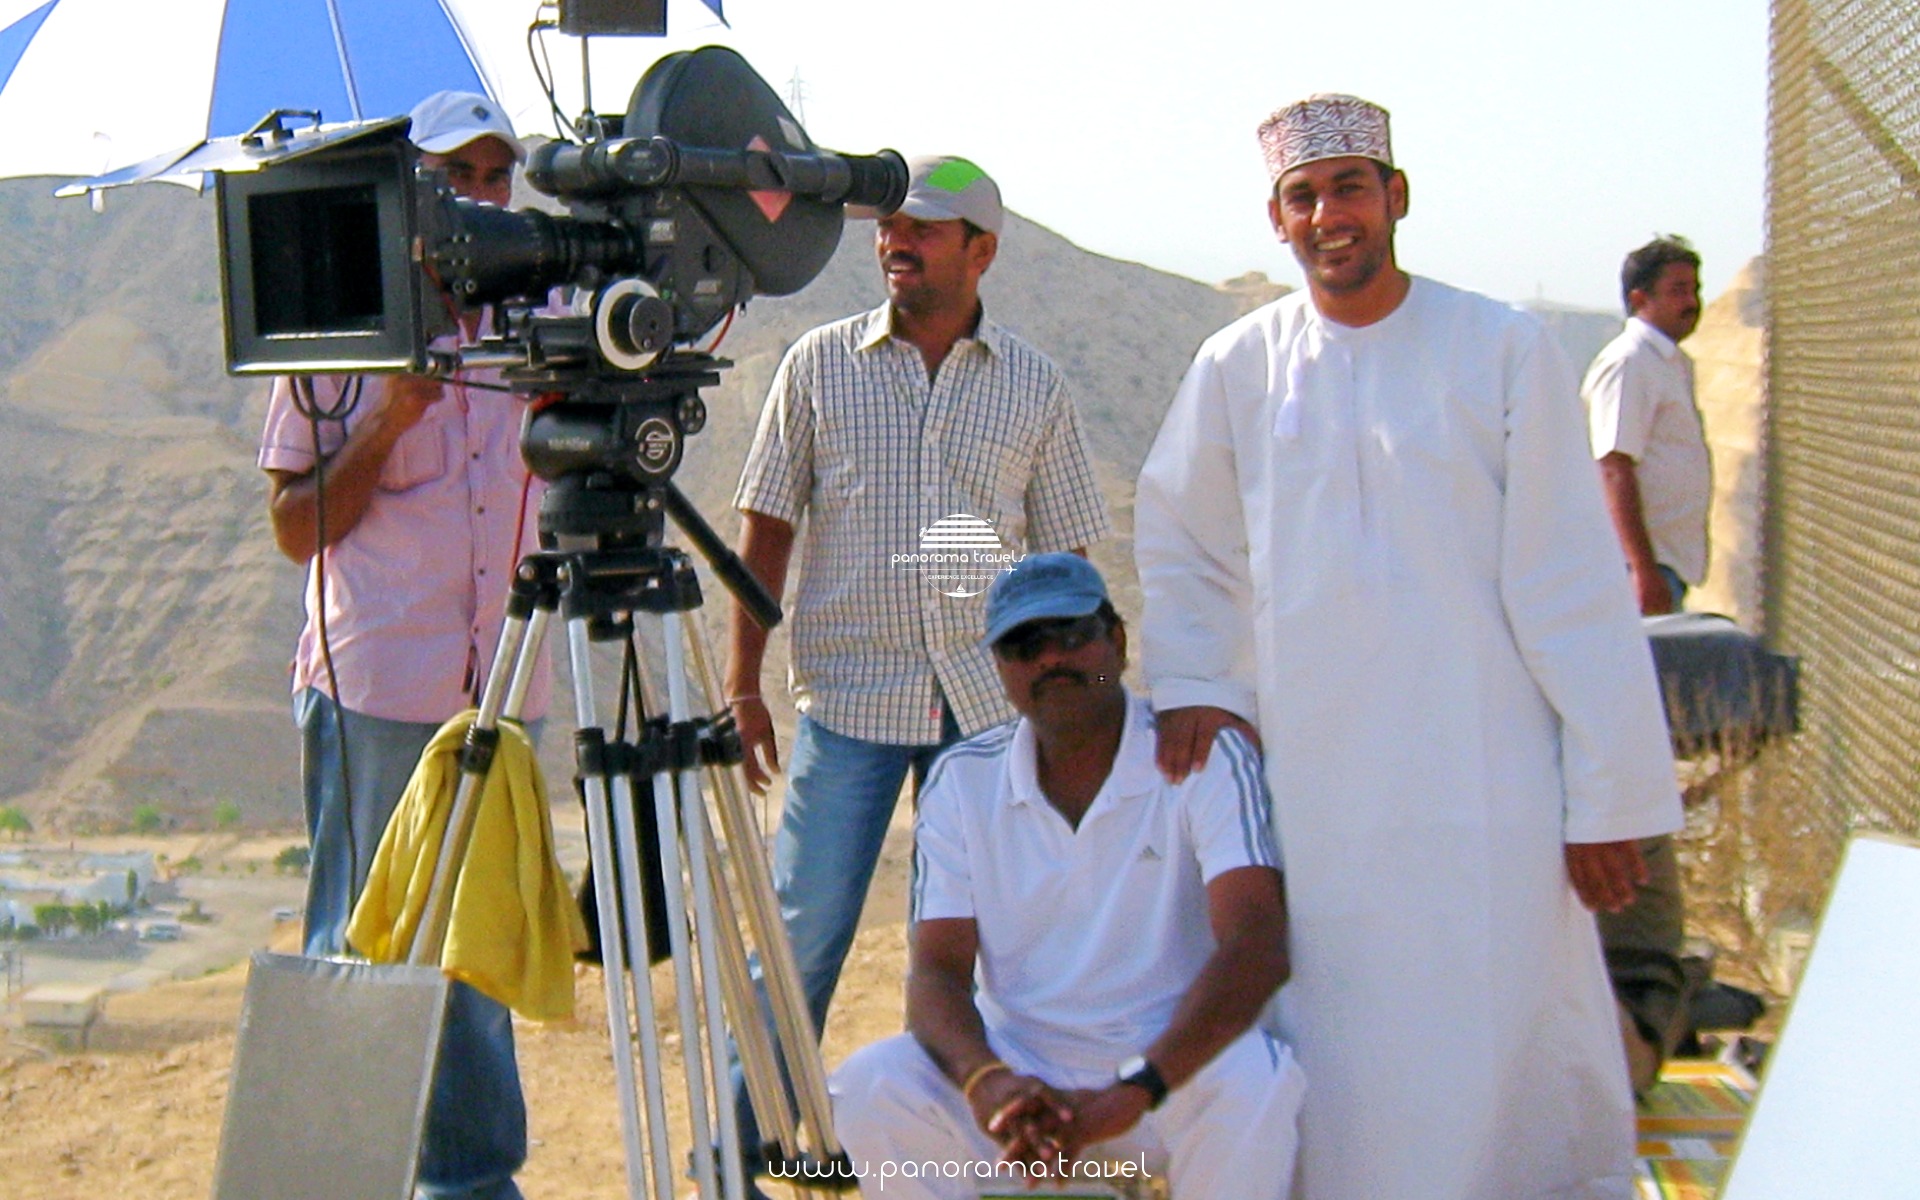 BOLLYWOOD FILM SHOOTING - AT BAR AL JISSAH OMAN